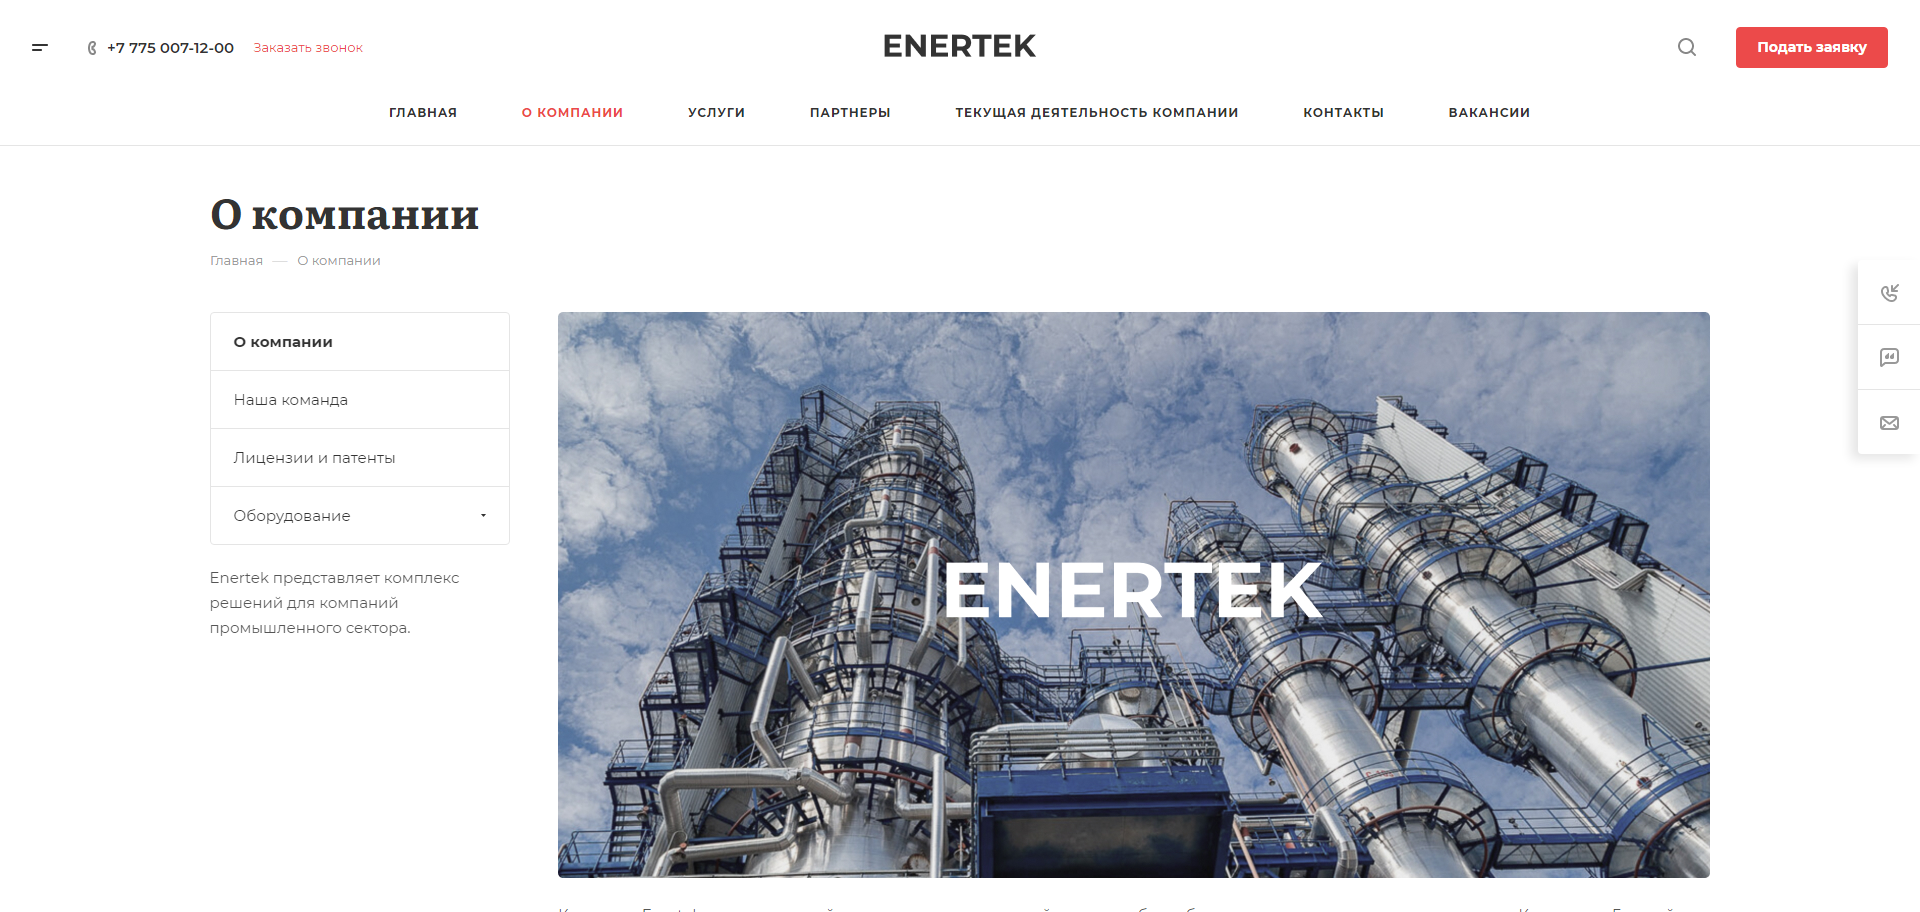 консалтинговая и инжиниринговая компания enertek